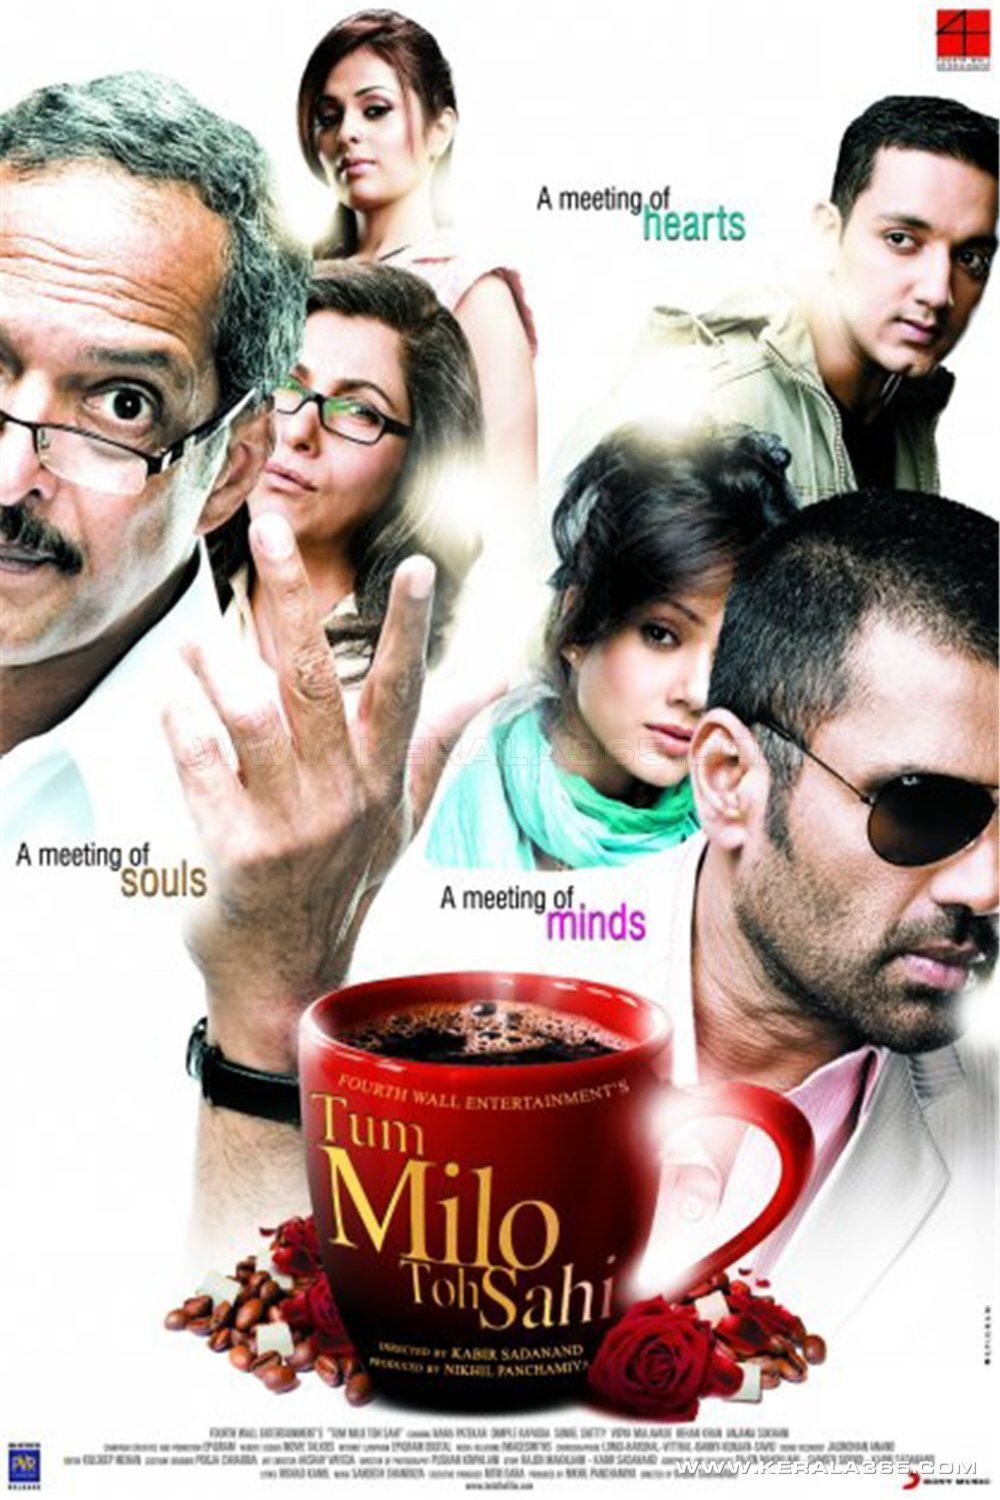 Poster of the movie Tum Milo Toh Sahi